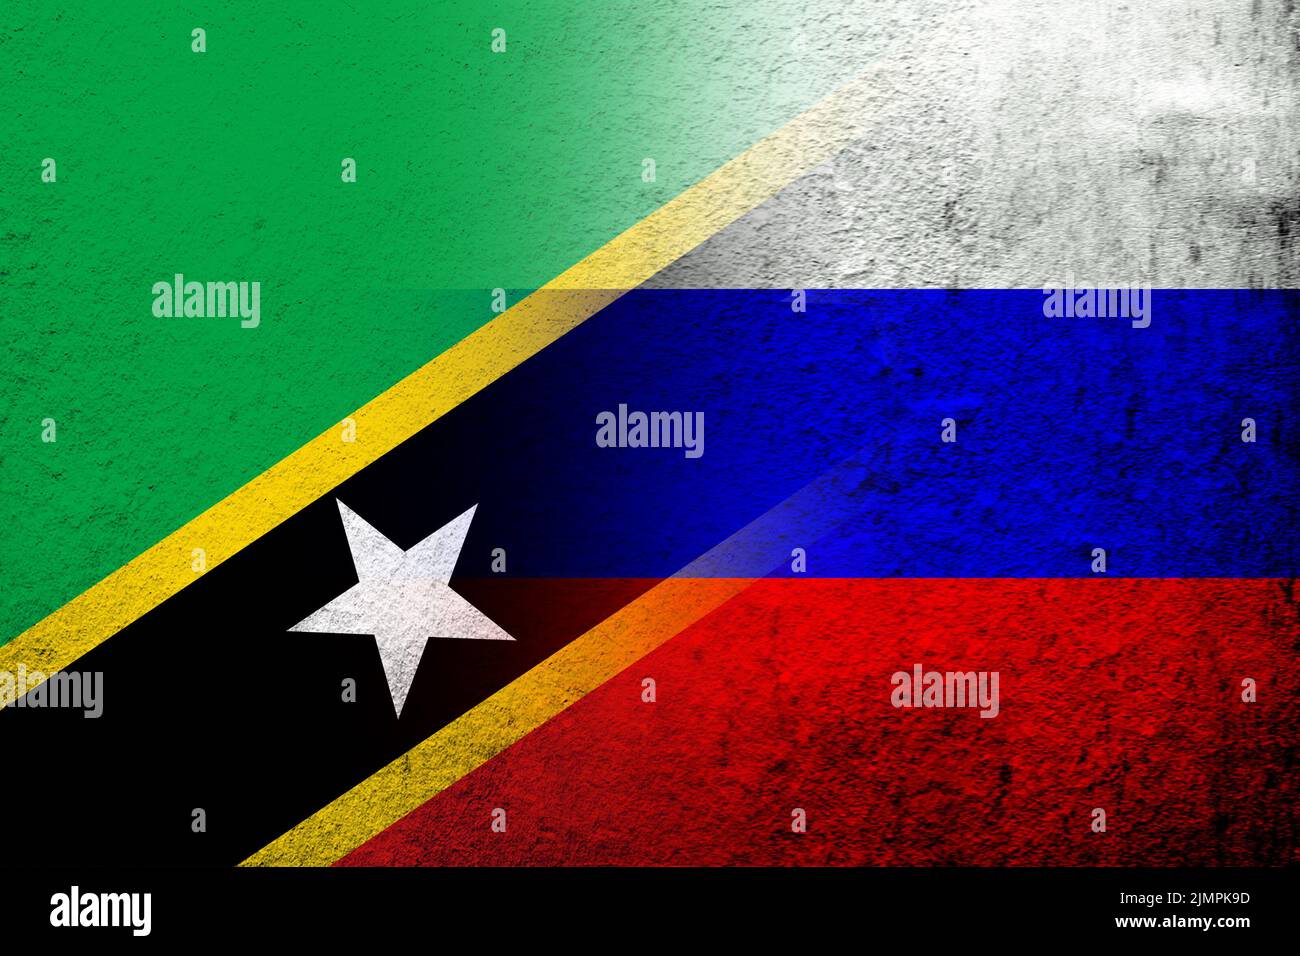 Nationalflagge der Russischen Föderation mit der Föderation der Heiligen Christopher und Nevis St. Kitts und Nevis Nationalflagge. Grun Stockfoto